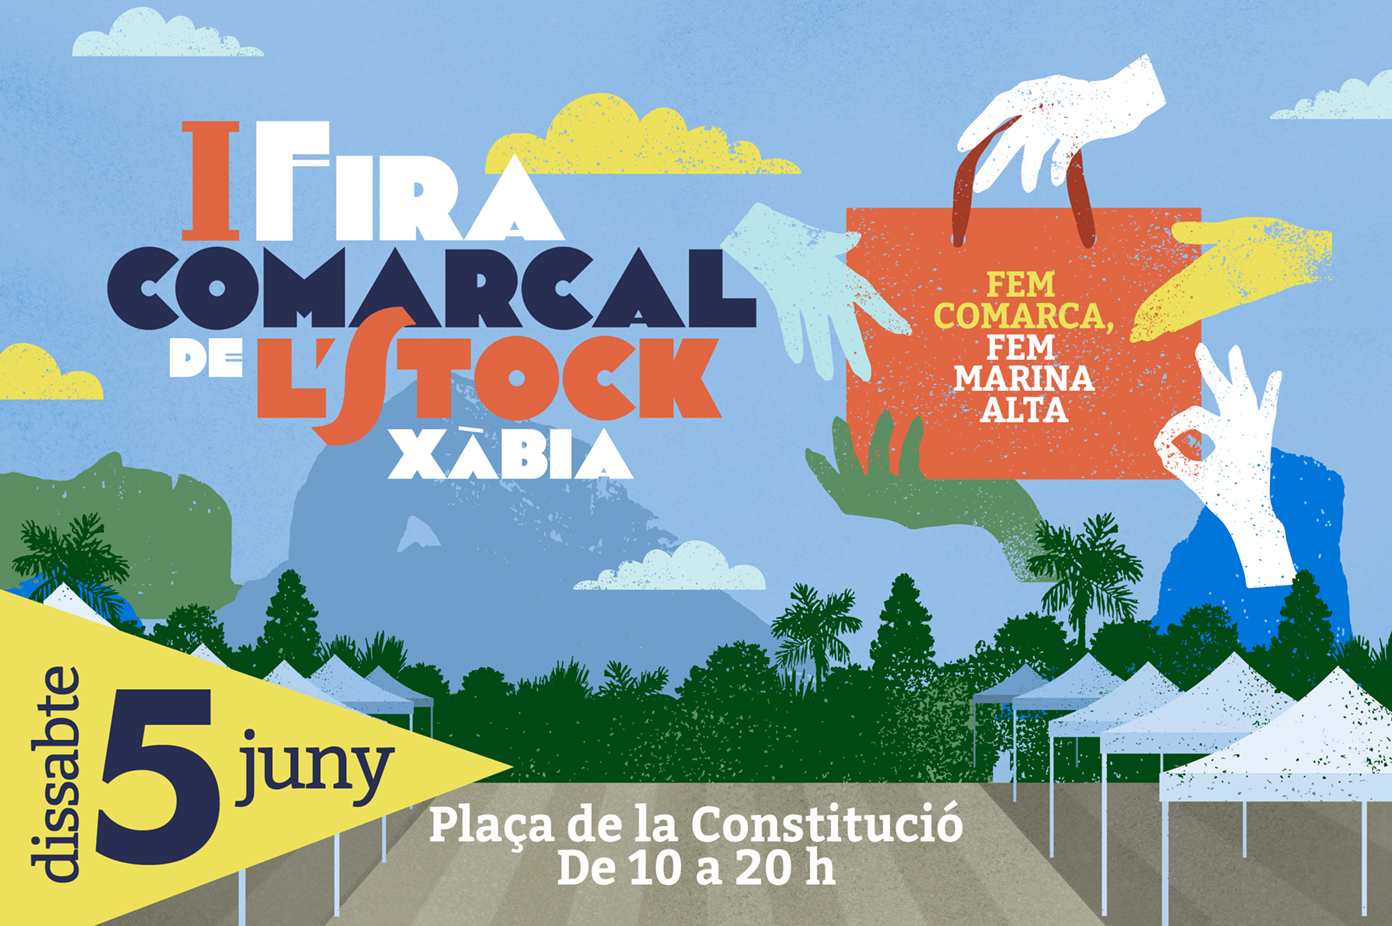 web fira comarcal stock 2021 forxa (1)